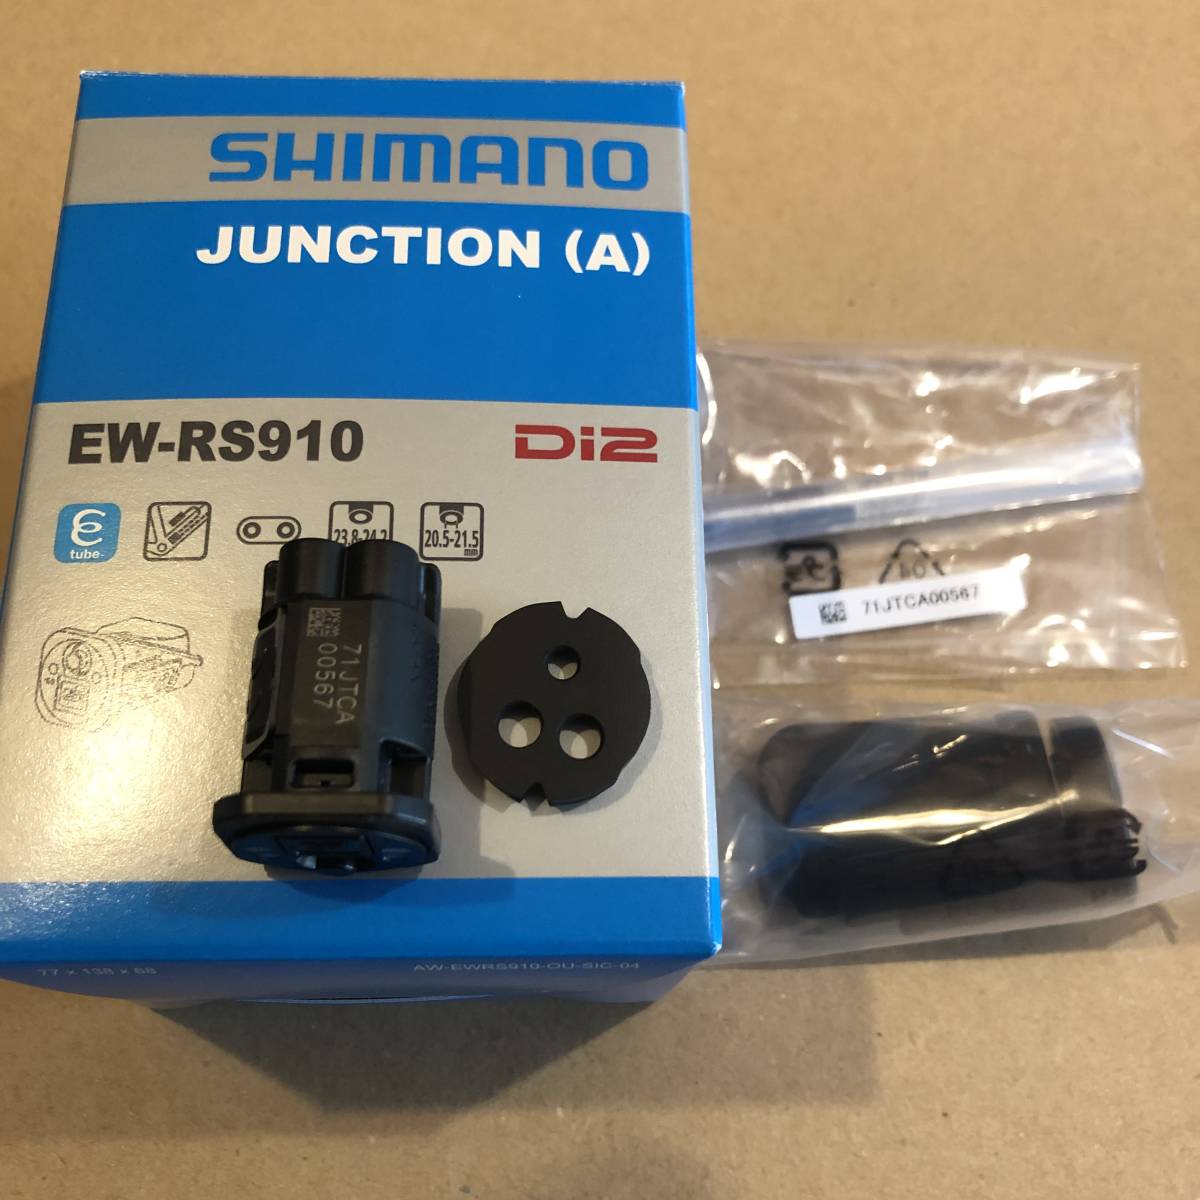 ついに再販開始 シマノ Di2 EW-RS910 ジャンクションA ビルトインタイプ 2ポート